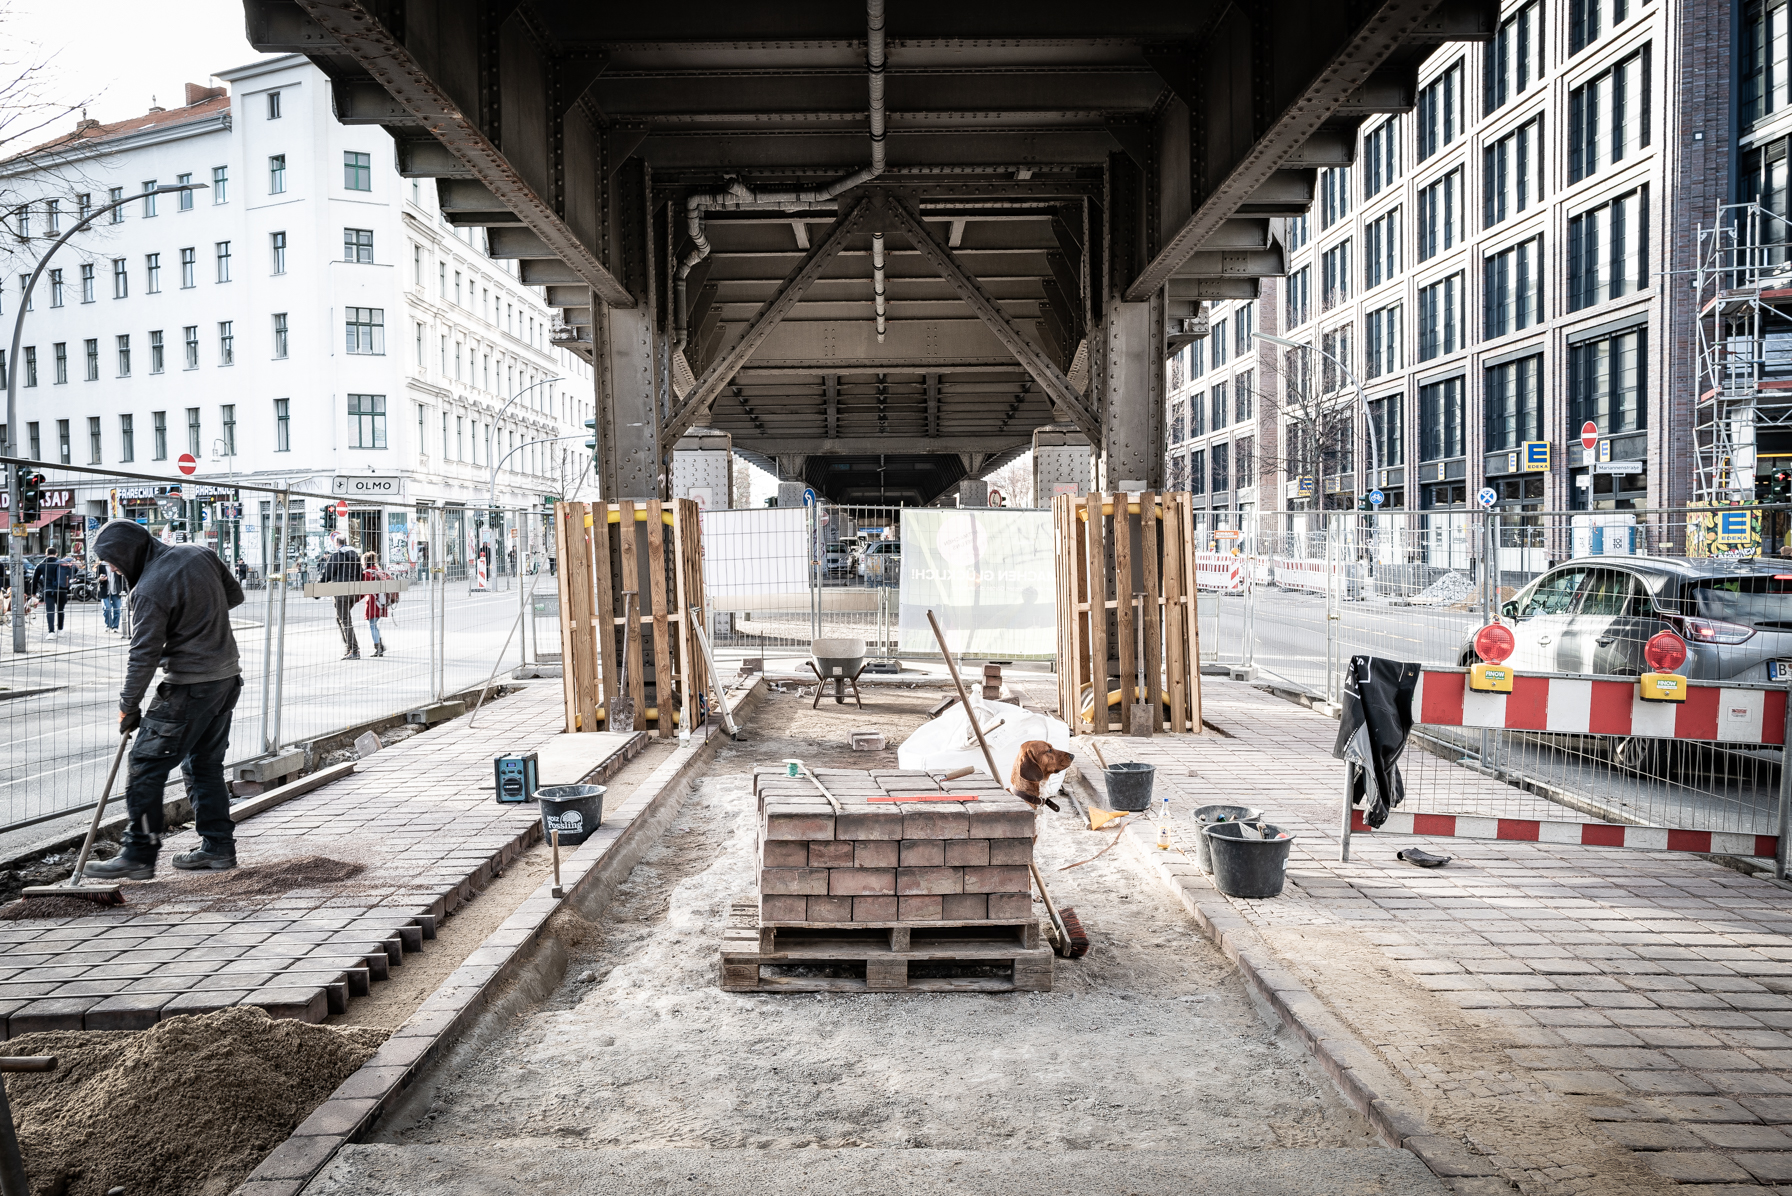 Baustelle unter dem Viadukt, Bauarbeiten am Rand, Neuverlegung der Pflastersteine